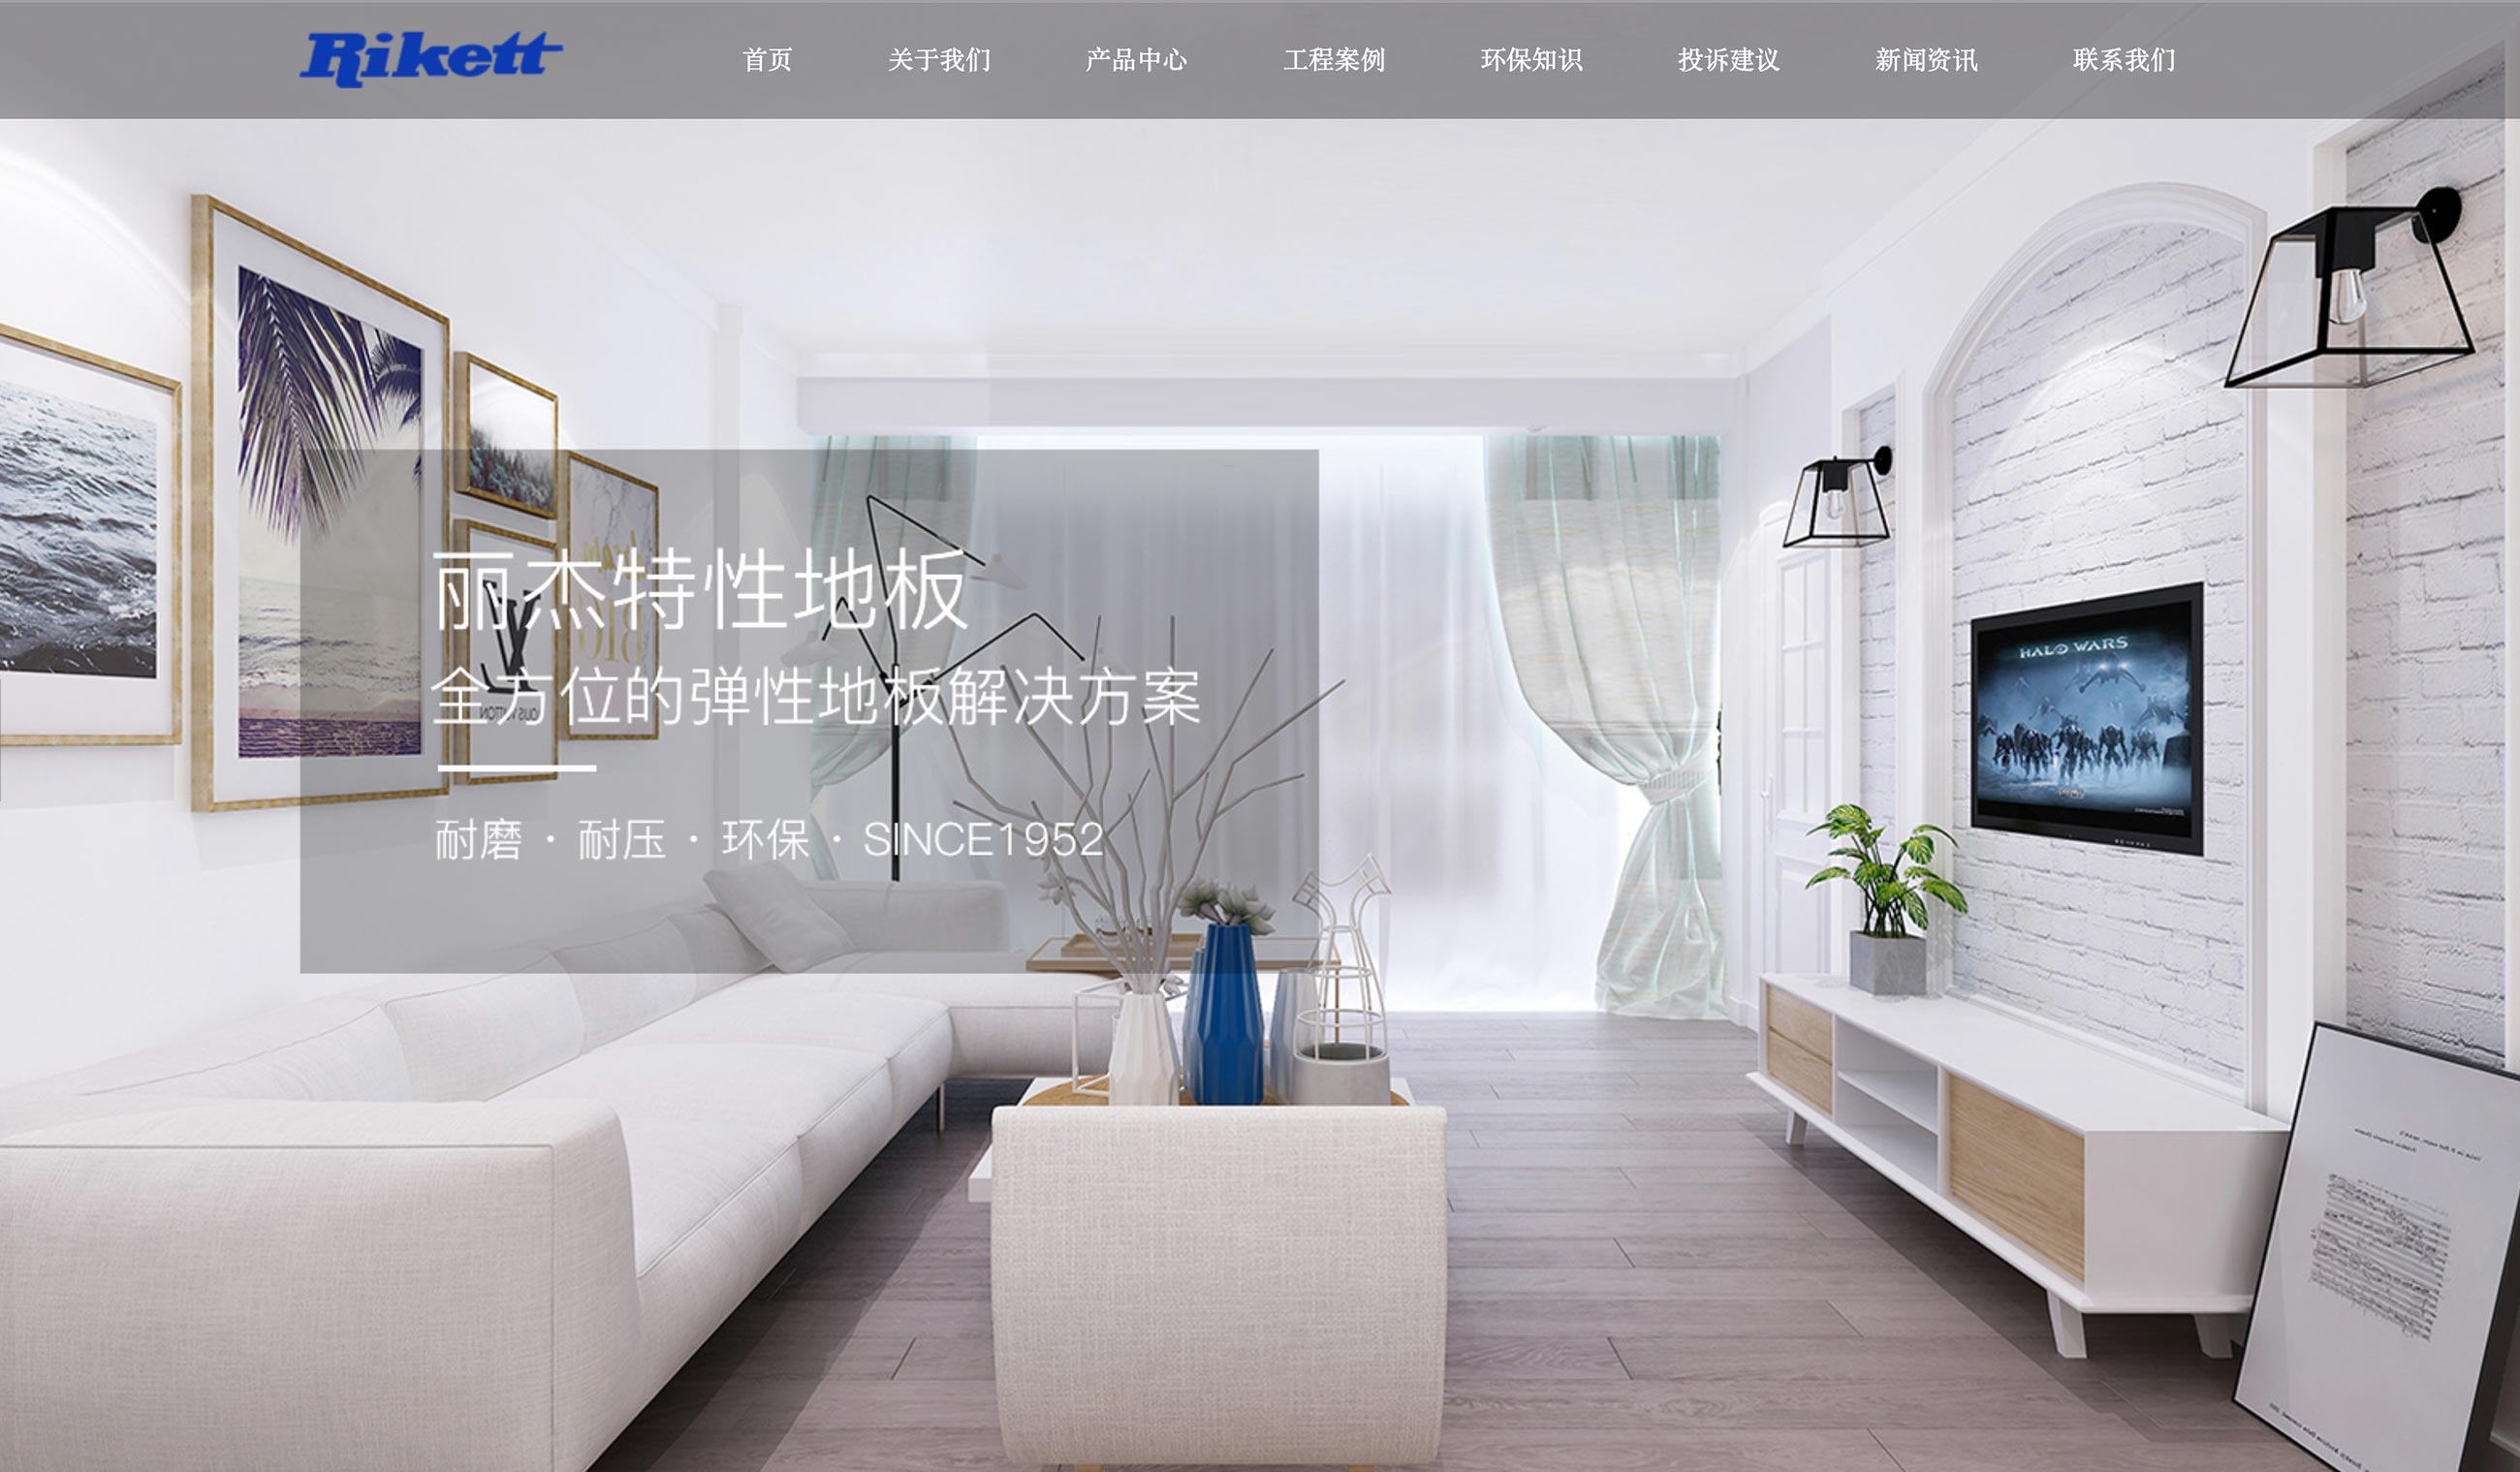 Screenshot of the Rikett China website